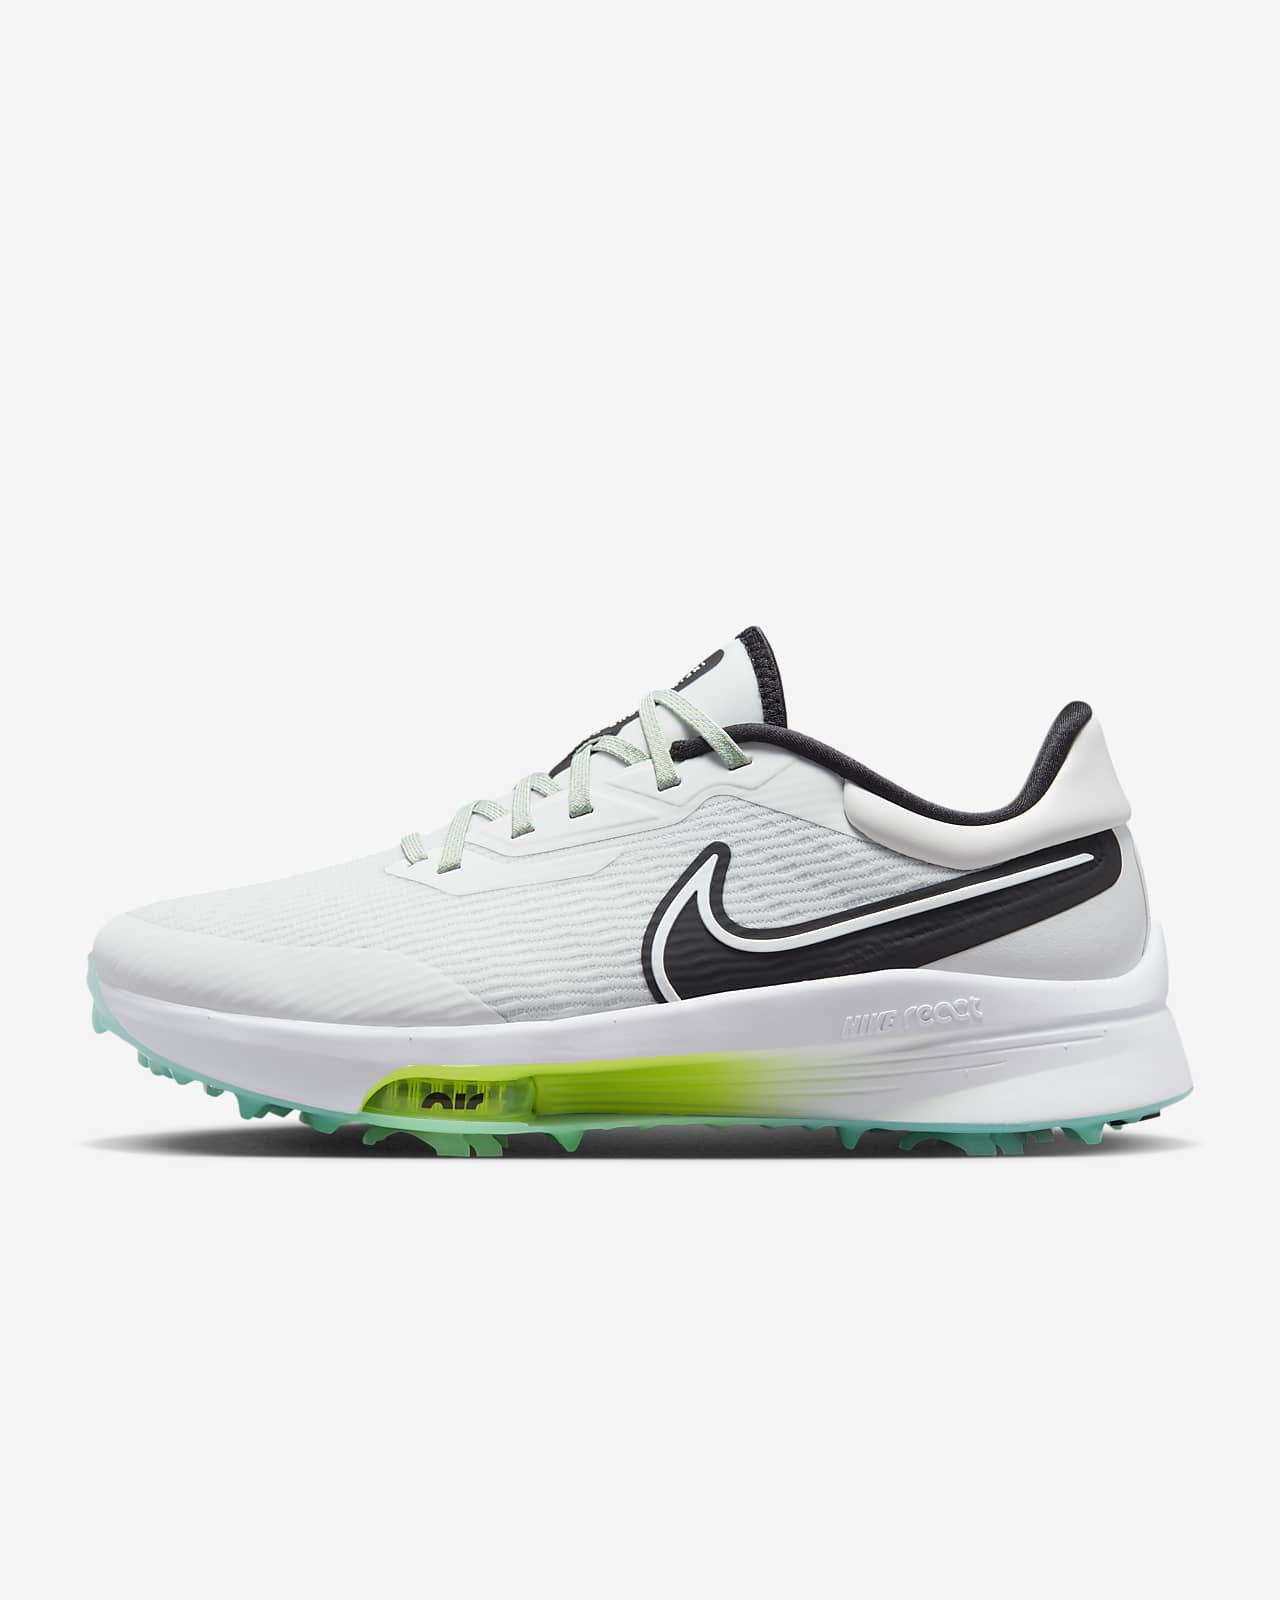 Land van staatsburgerschap leer smog Nike Air Zoom Infinity Tour NEXT% Golfschoenen voor heren. Nike NL